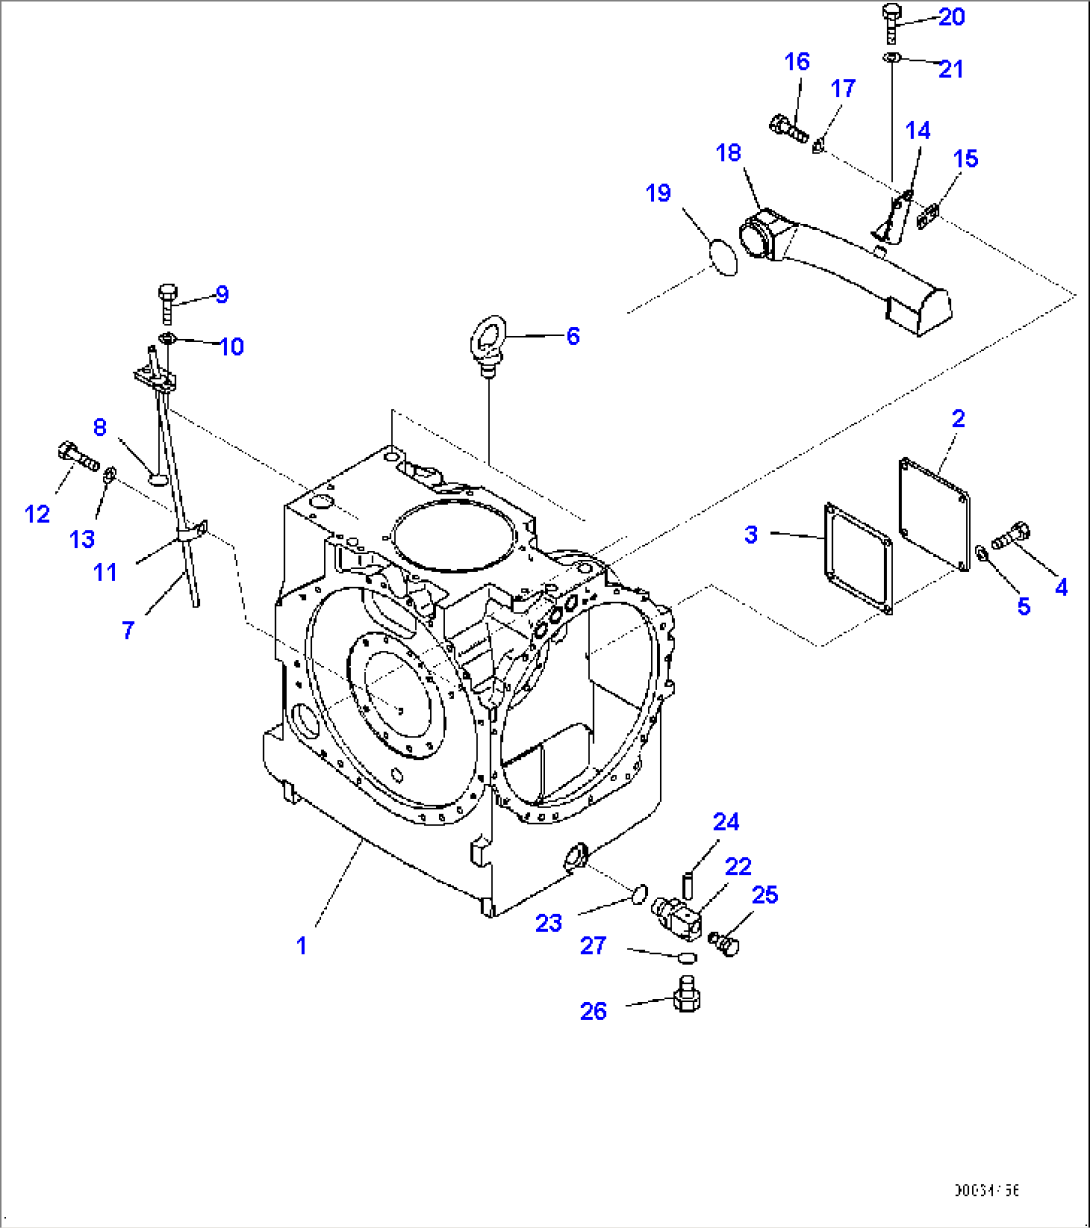 Power Train, Steering Clutch and Steering Brake (2/2) (#85077-)